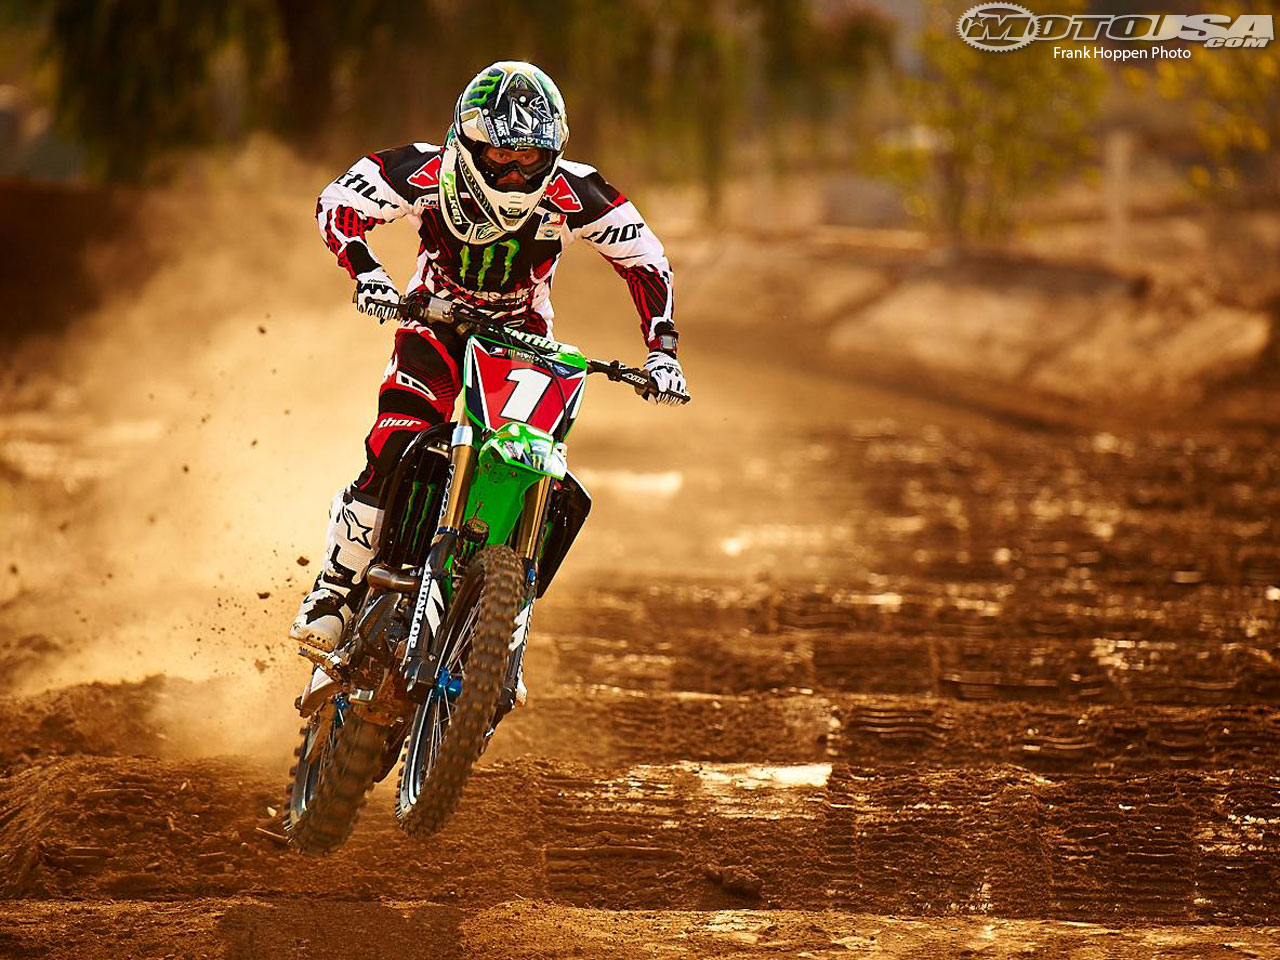 Motocross do Cariri: Ryan Villopoto fala sobre o Monster ...